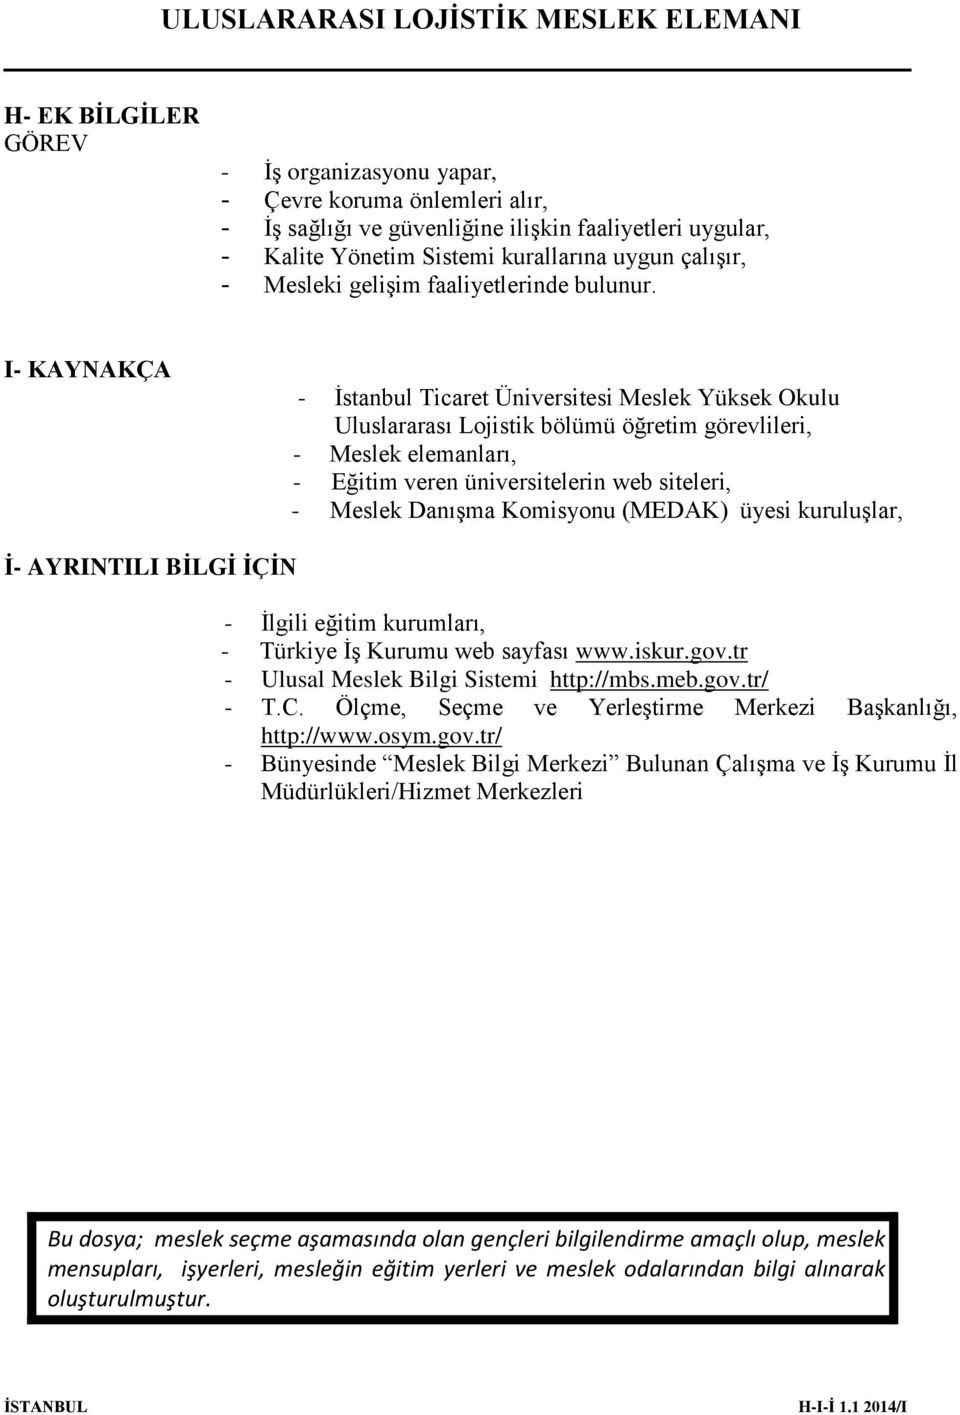 I- KAYNAKÇA - İstanbul Ticaret Üniversitesi Meslek Yüksek Okulu Uluslararası Lojistik bölümü öğretim görevlileri, - Meslek elemanları, - Eğitim veren üniversitelerin web siteleri, - Meslek Danışma